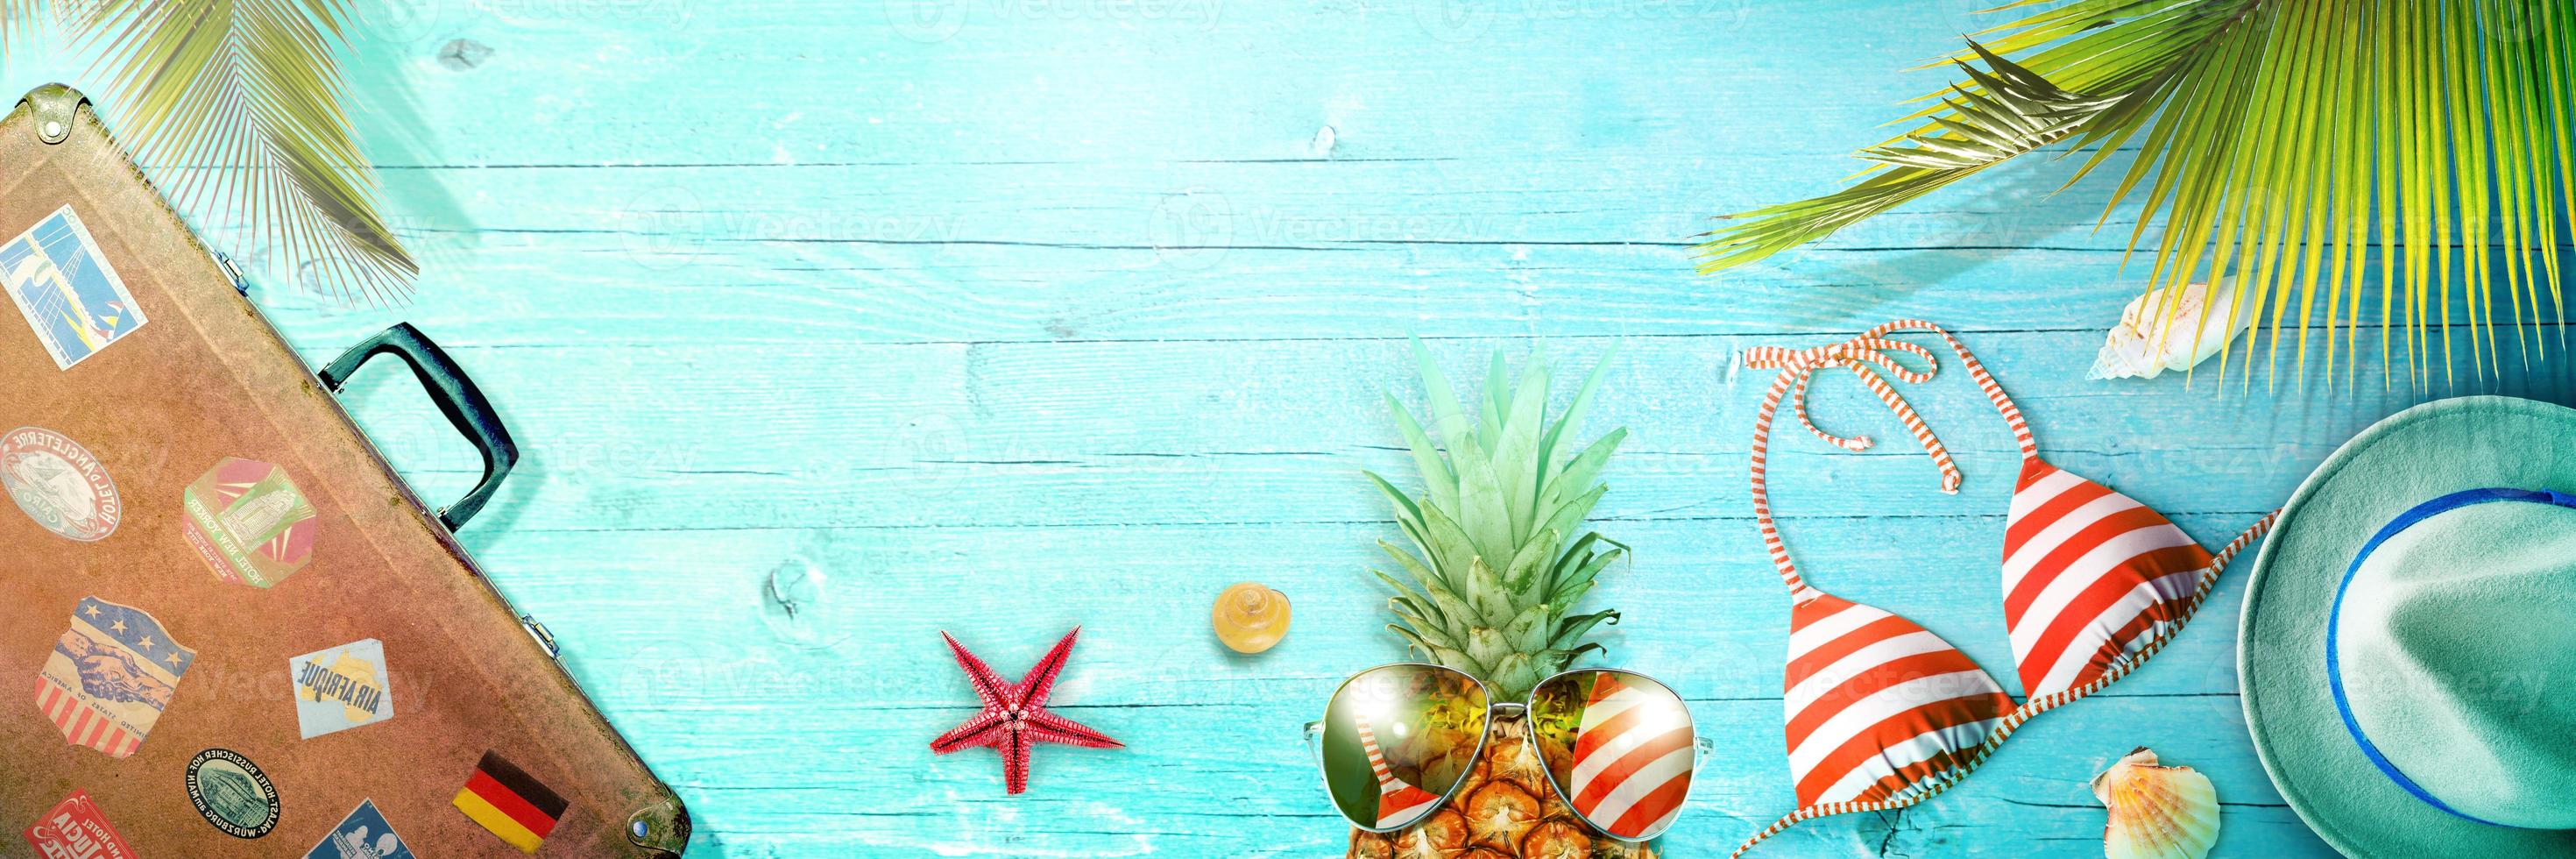 concetto nautico con foglia di palma, cappello da spiaggia, conchiglie e ananas. foto